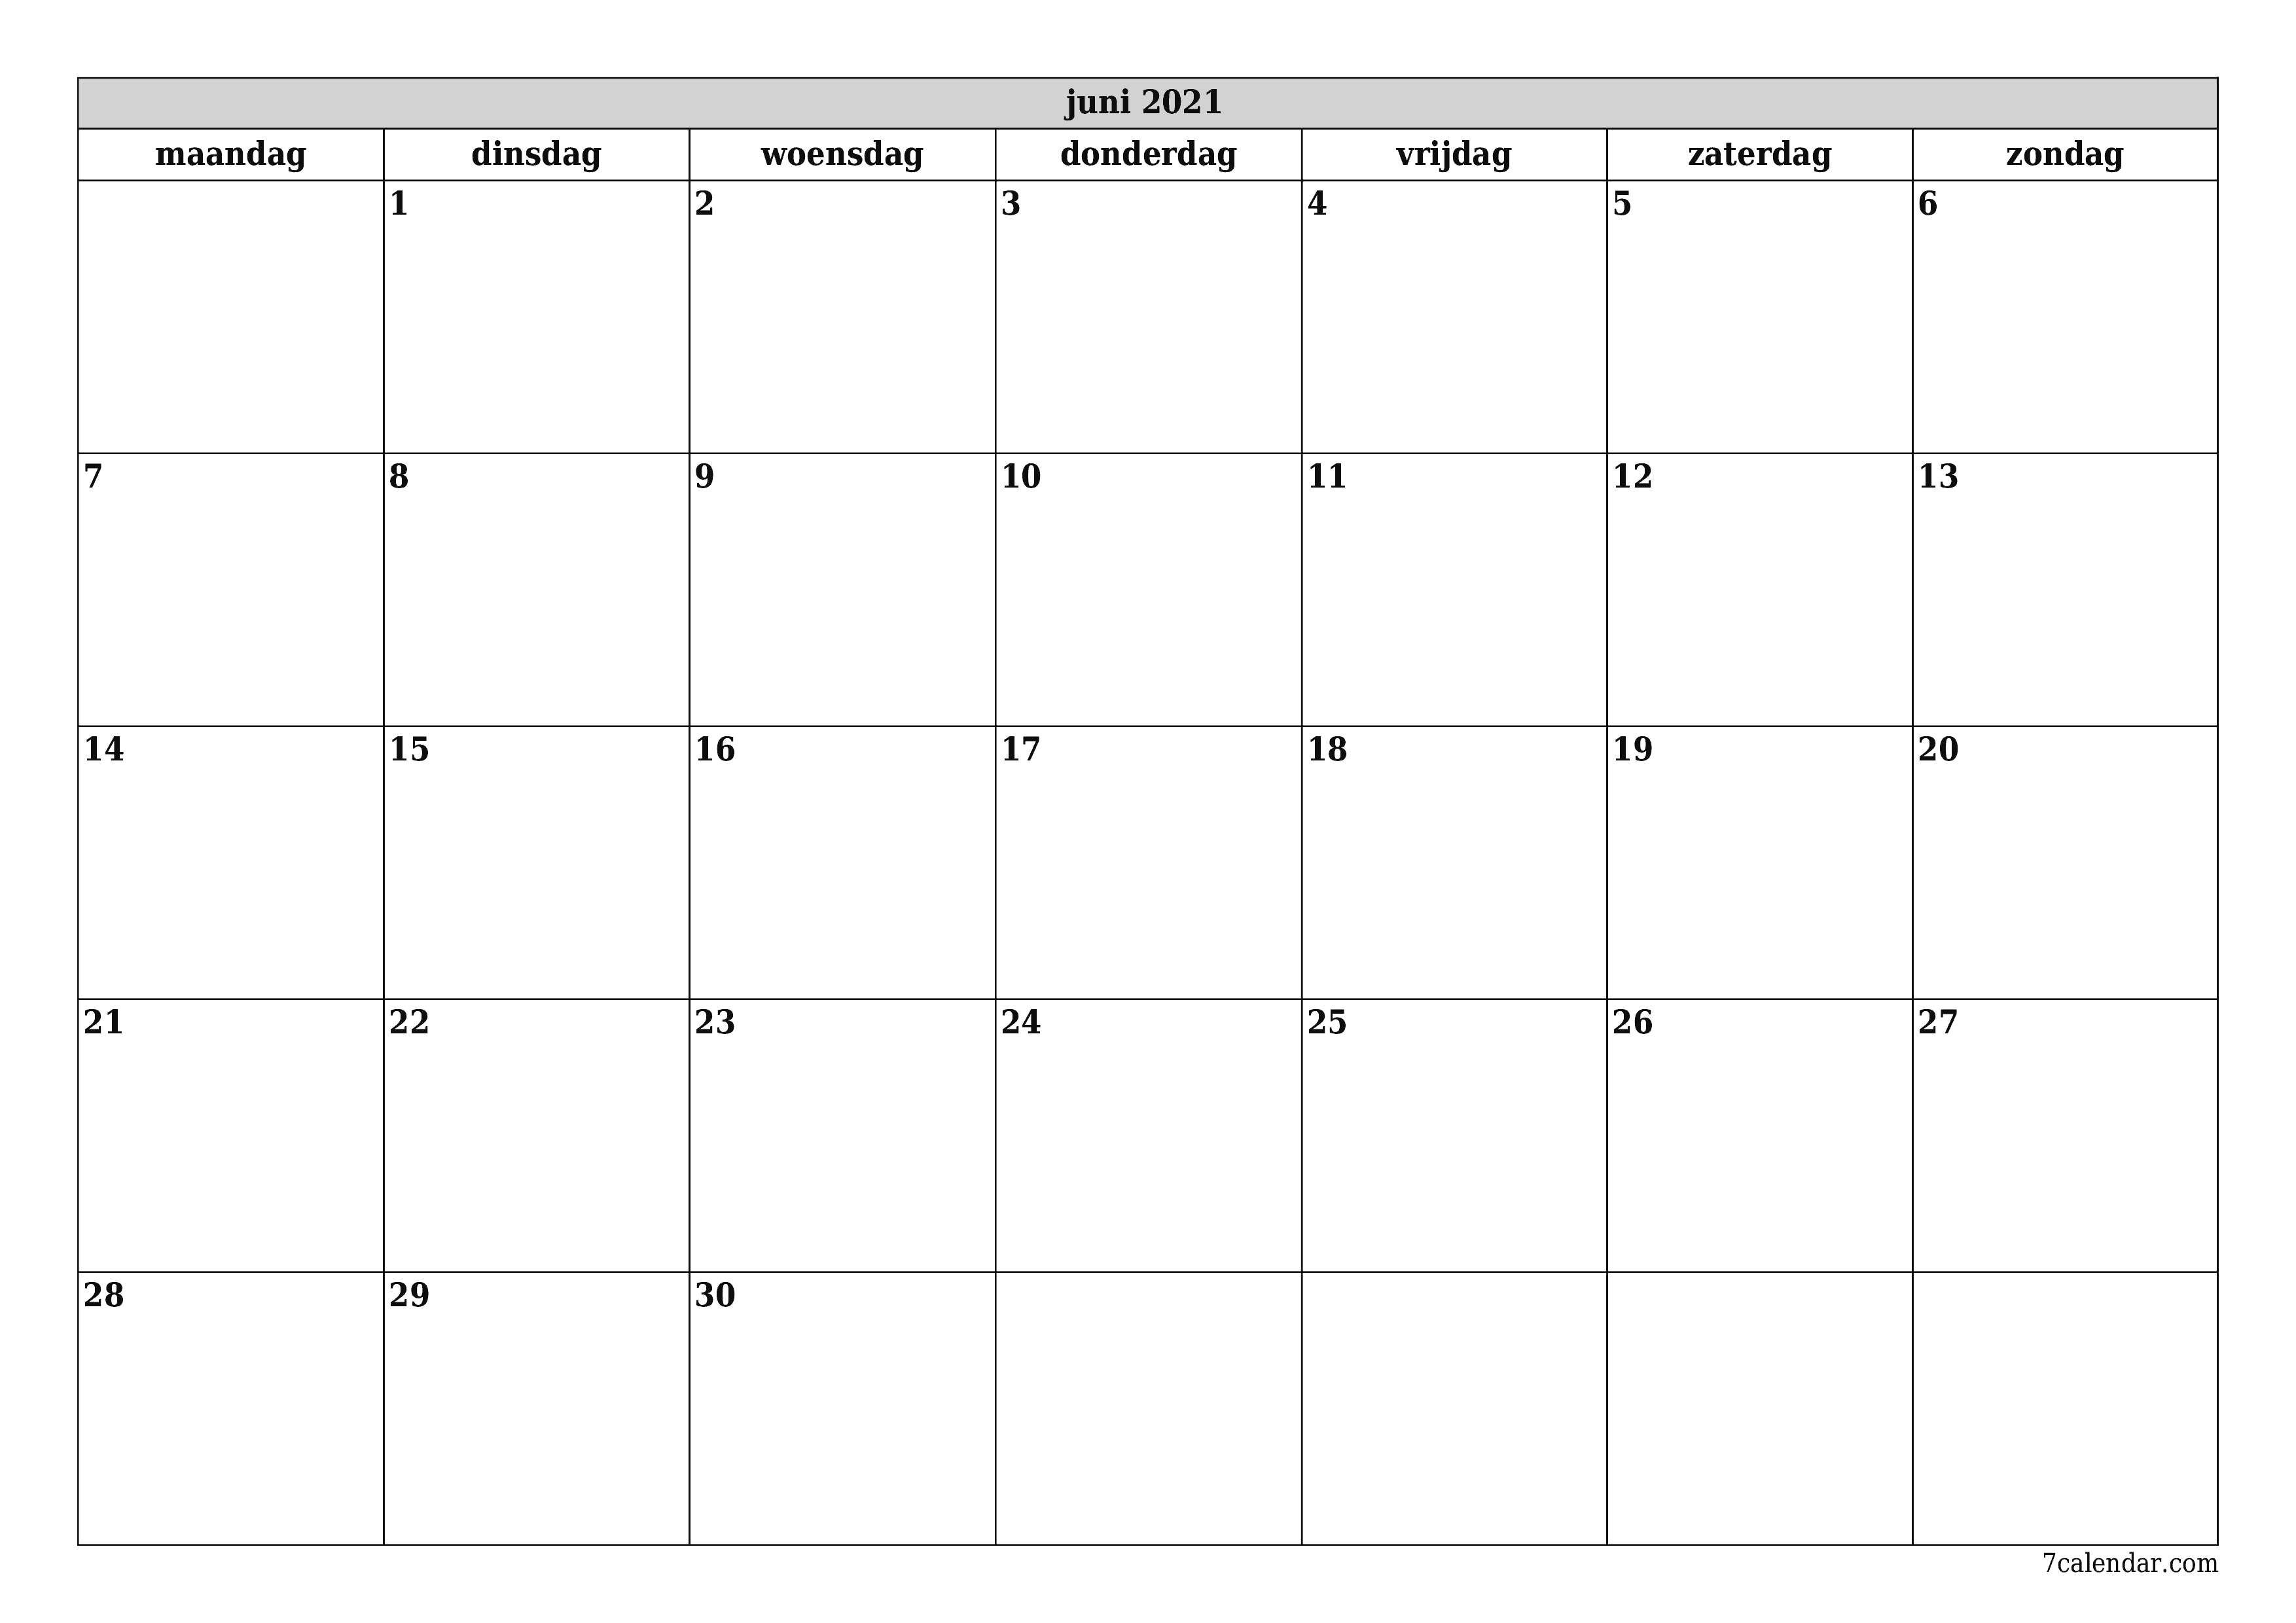 Lege maandplanner voor maand juni 2021 met notities, opslaan en afdrukken naar pdf PNG Dutch